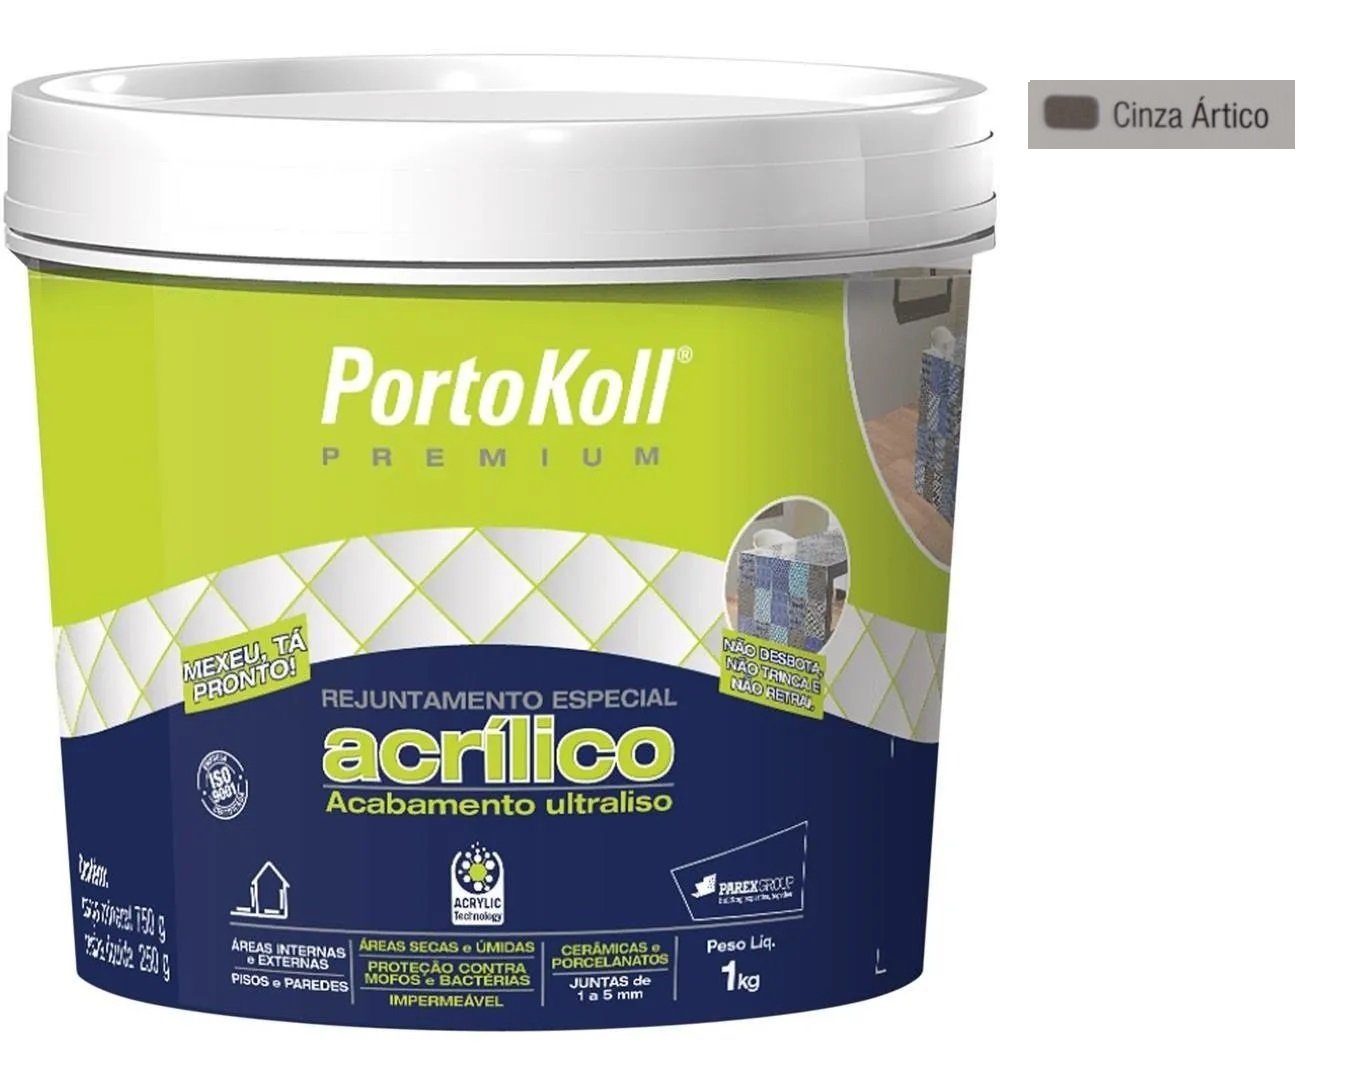 Rejunte Acrílico Portokoll Premium 1kg - CINZA ÁRTICO